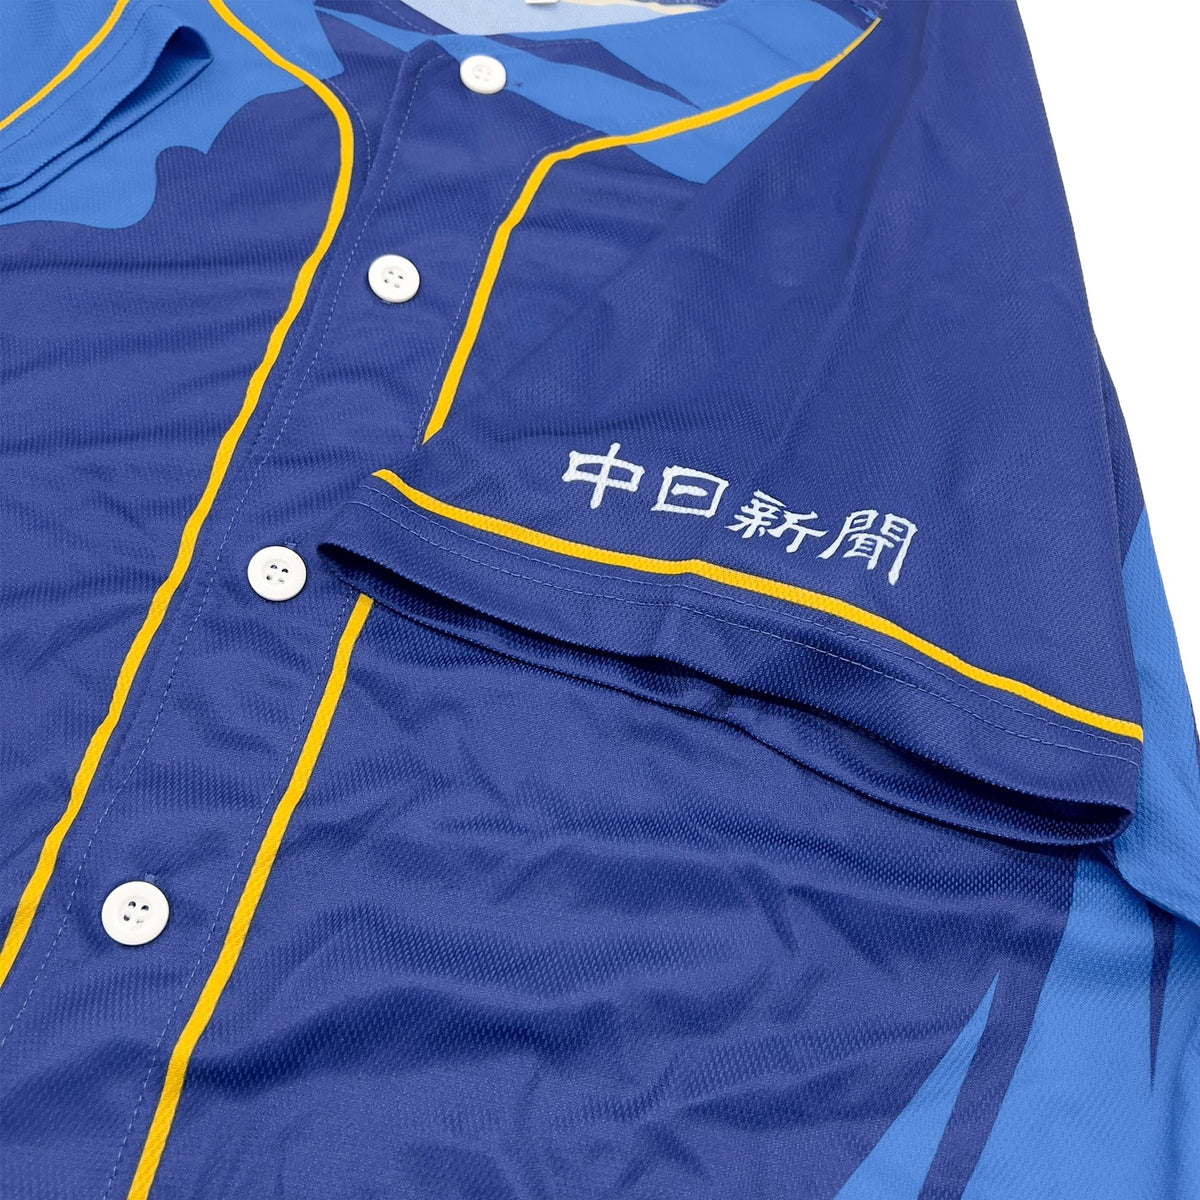 Limited Japan NPB Baseball Chunichi Dragons Promotional Jersey Away 2019 - Sugoi JDM